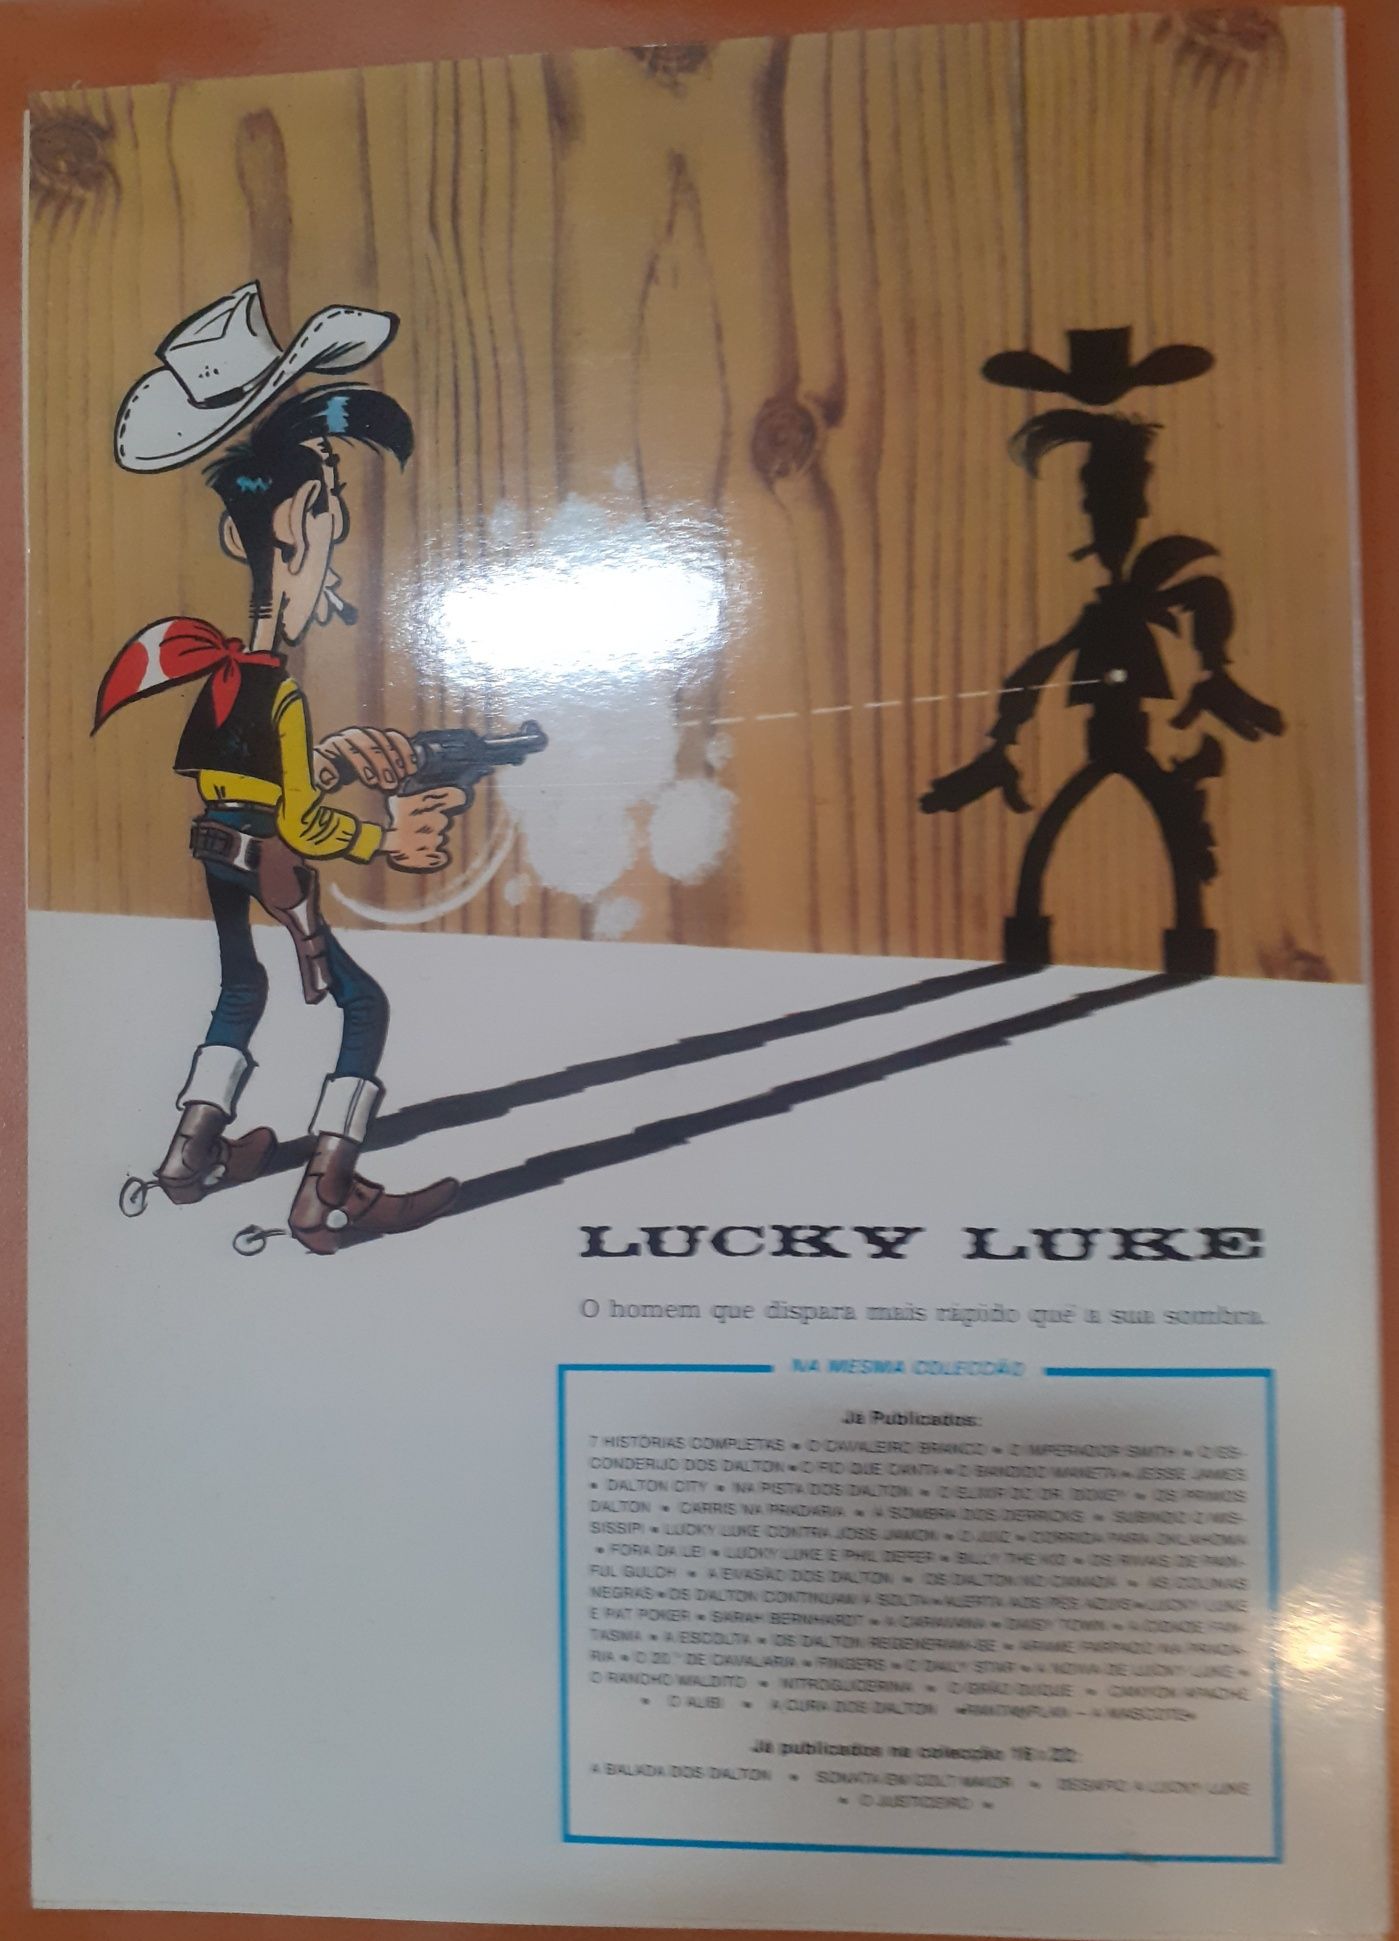 Carlos Acutis, Gus e Álibi de Lucky Luke